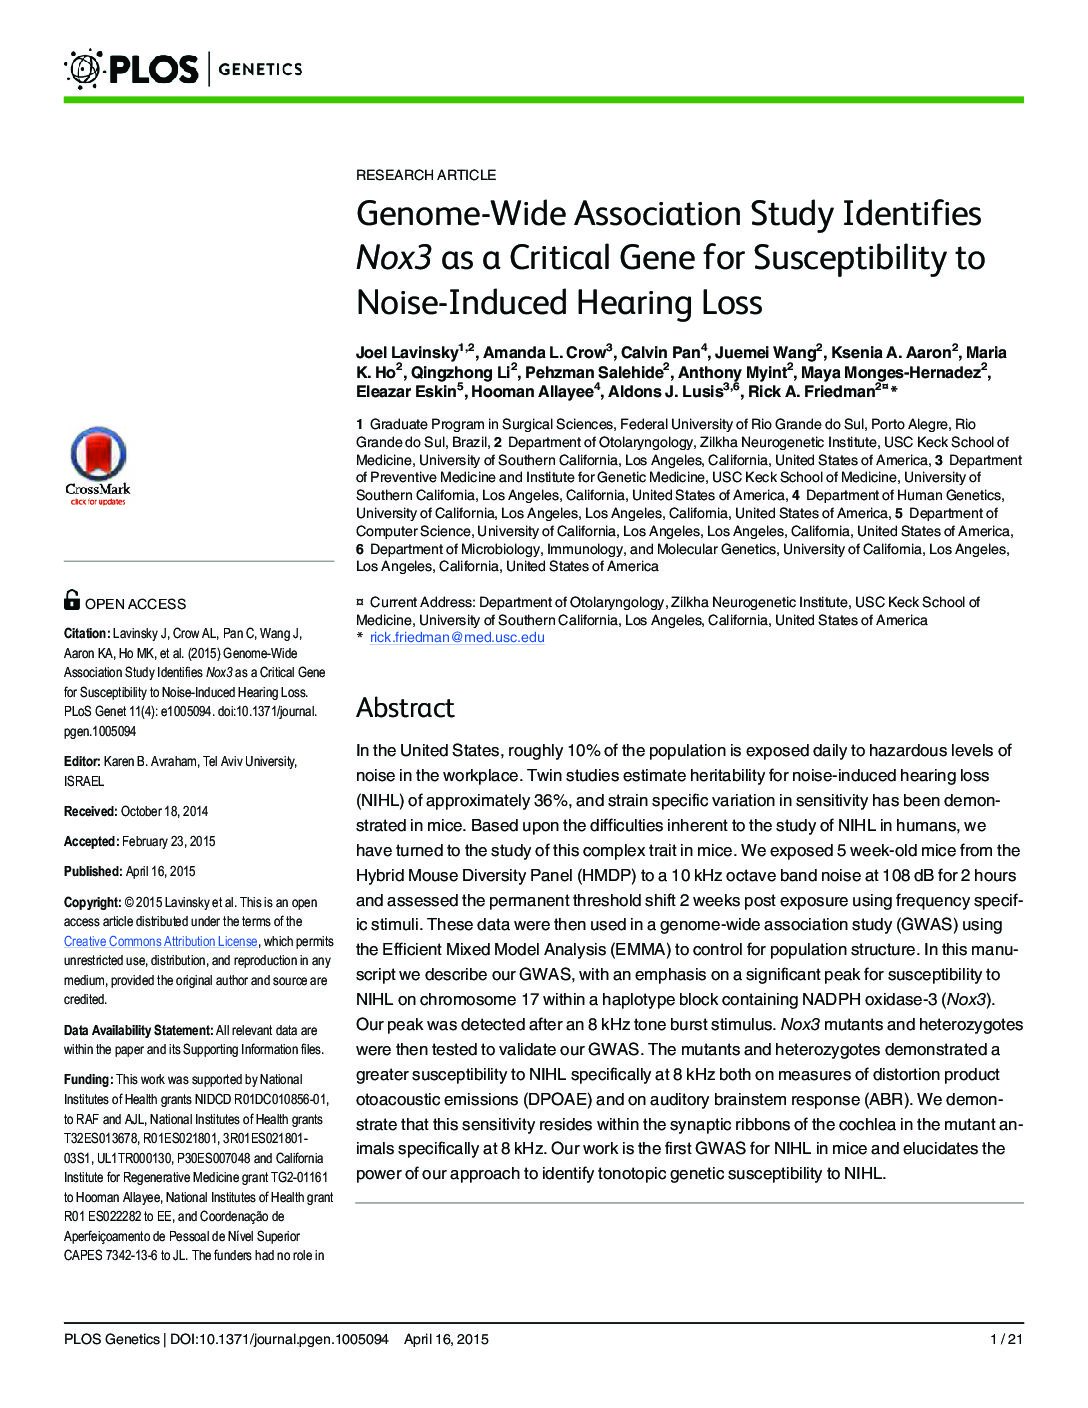 Estudo De Associação Genômica Ampla Identifica Nox3 Como Um Gene Importante Para A Suscetibilidade De Perda Auditiva Induzida Por Barulho